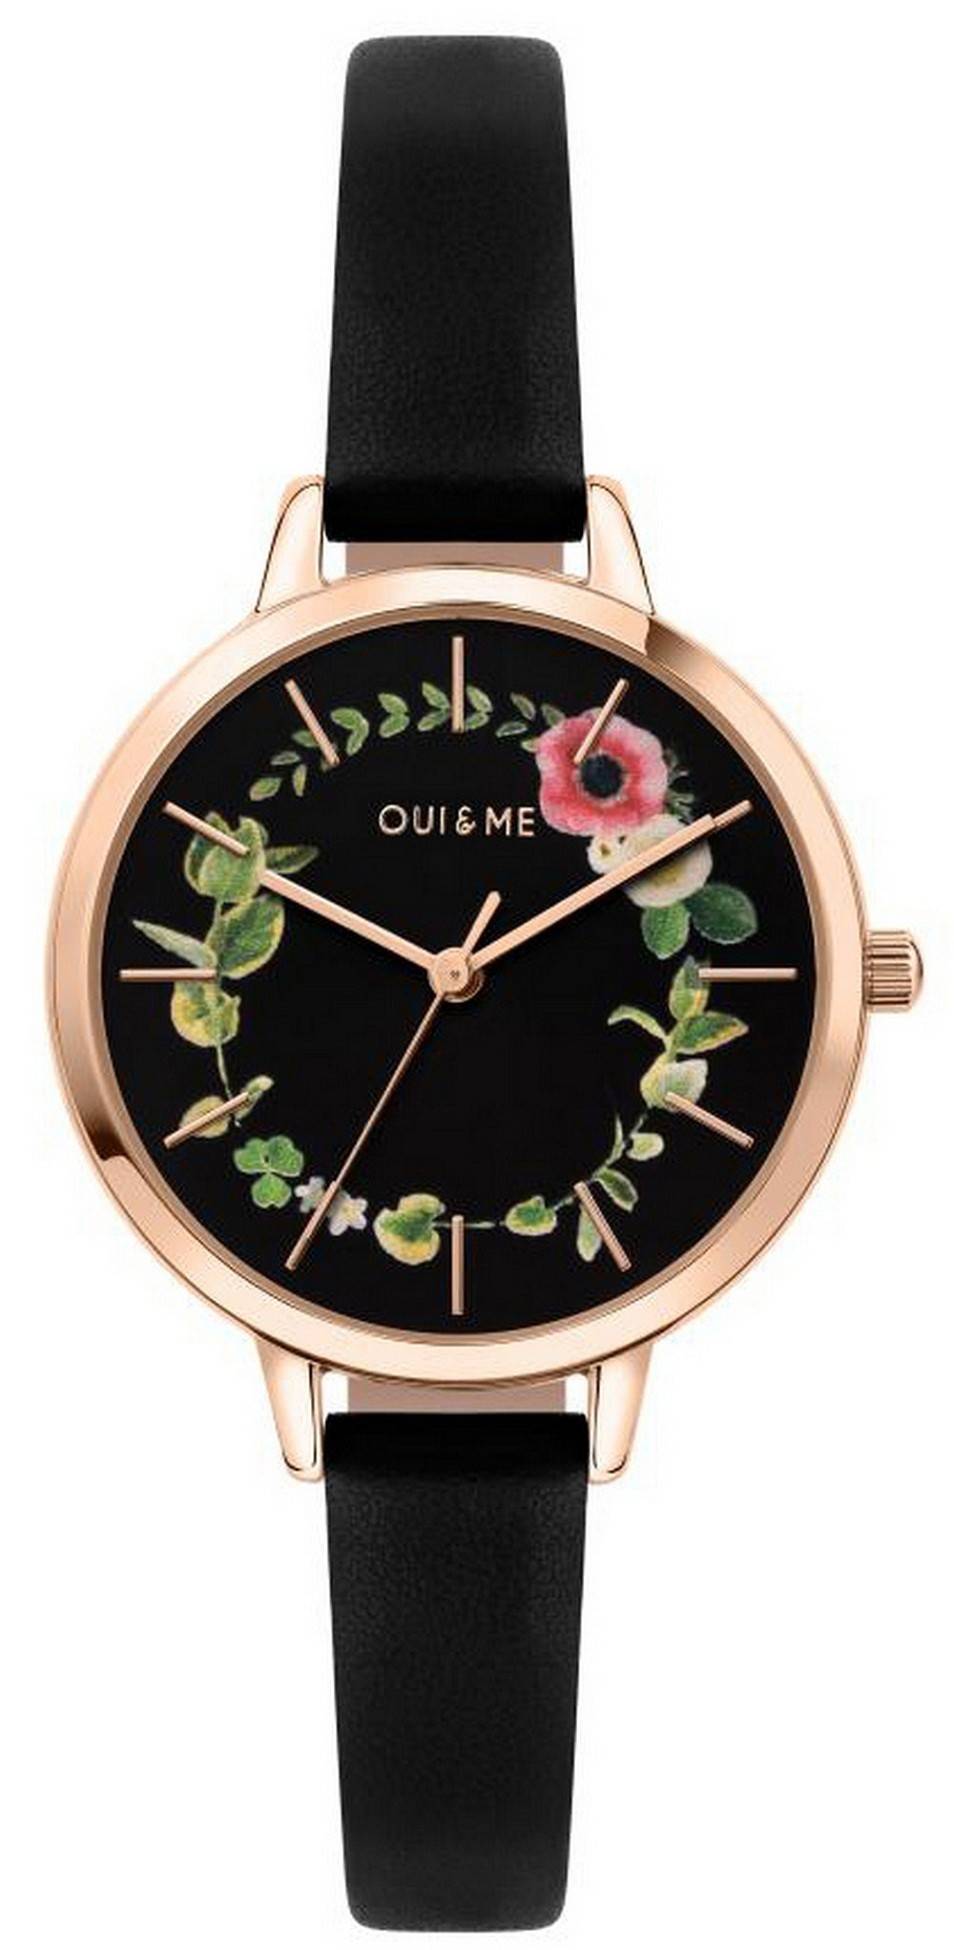 Oui & Me Petite Fleurette Black Dial Leather Strap Quartz ME010007 Women's Watch